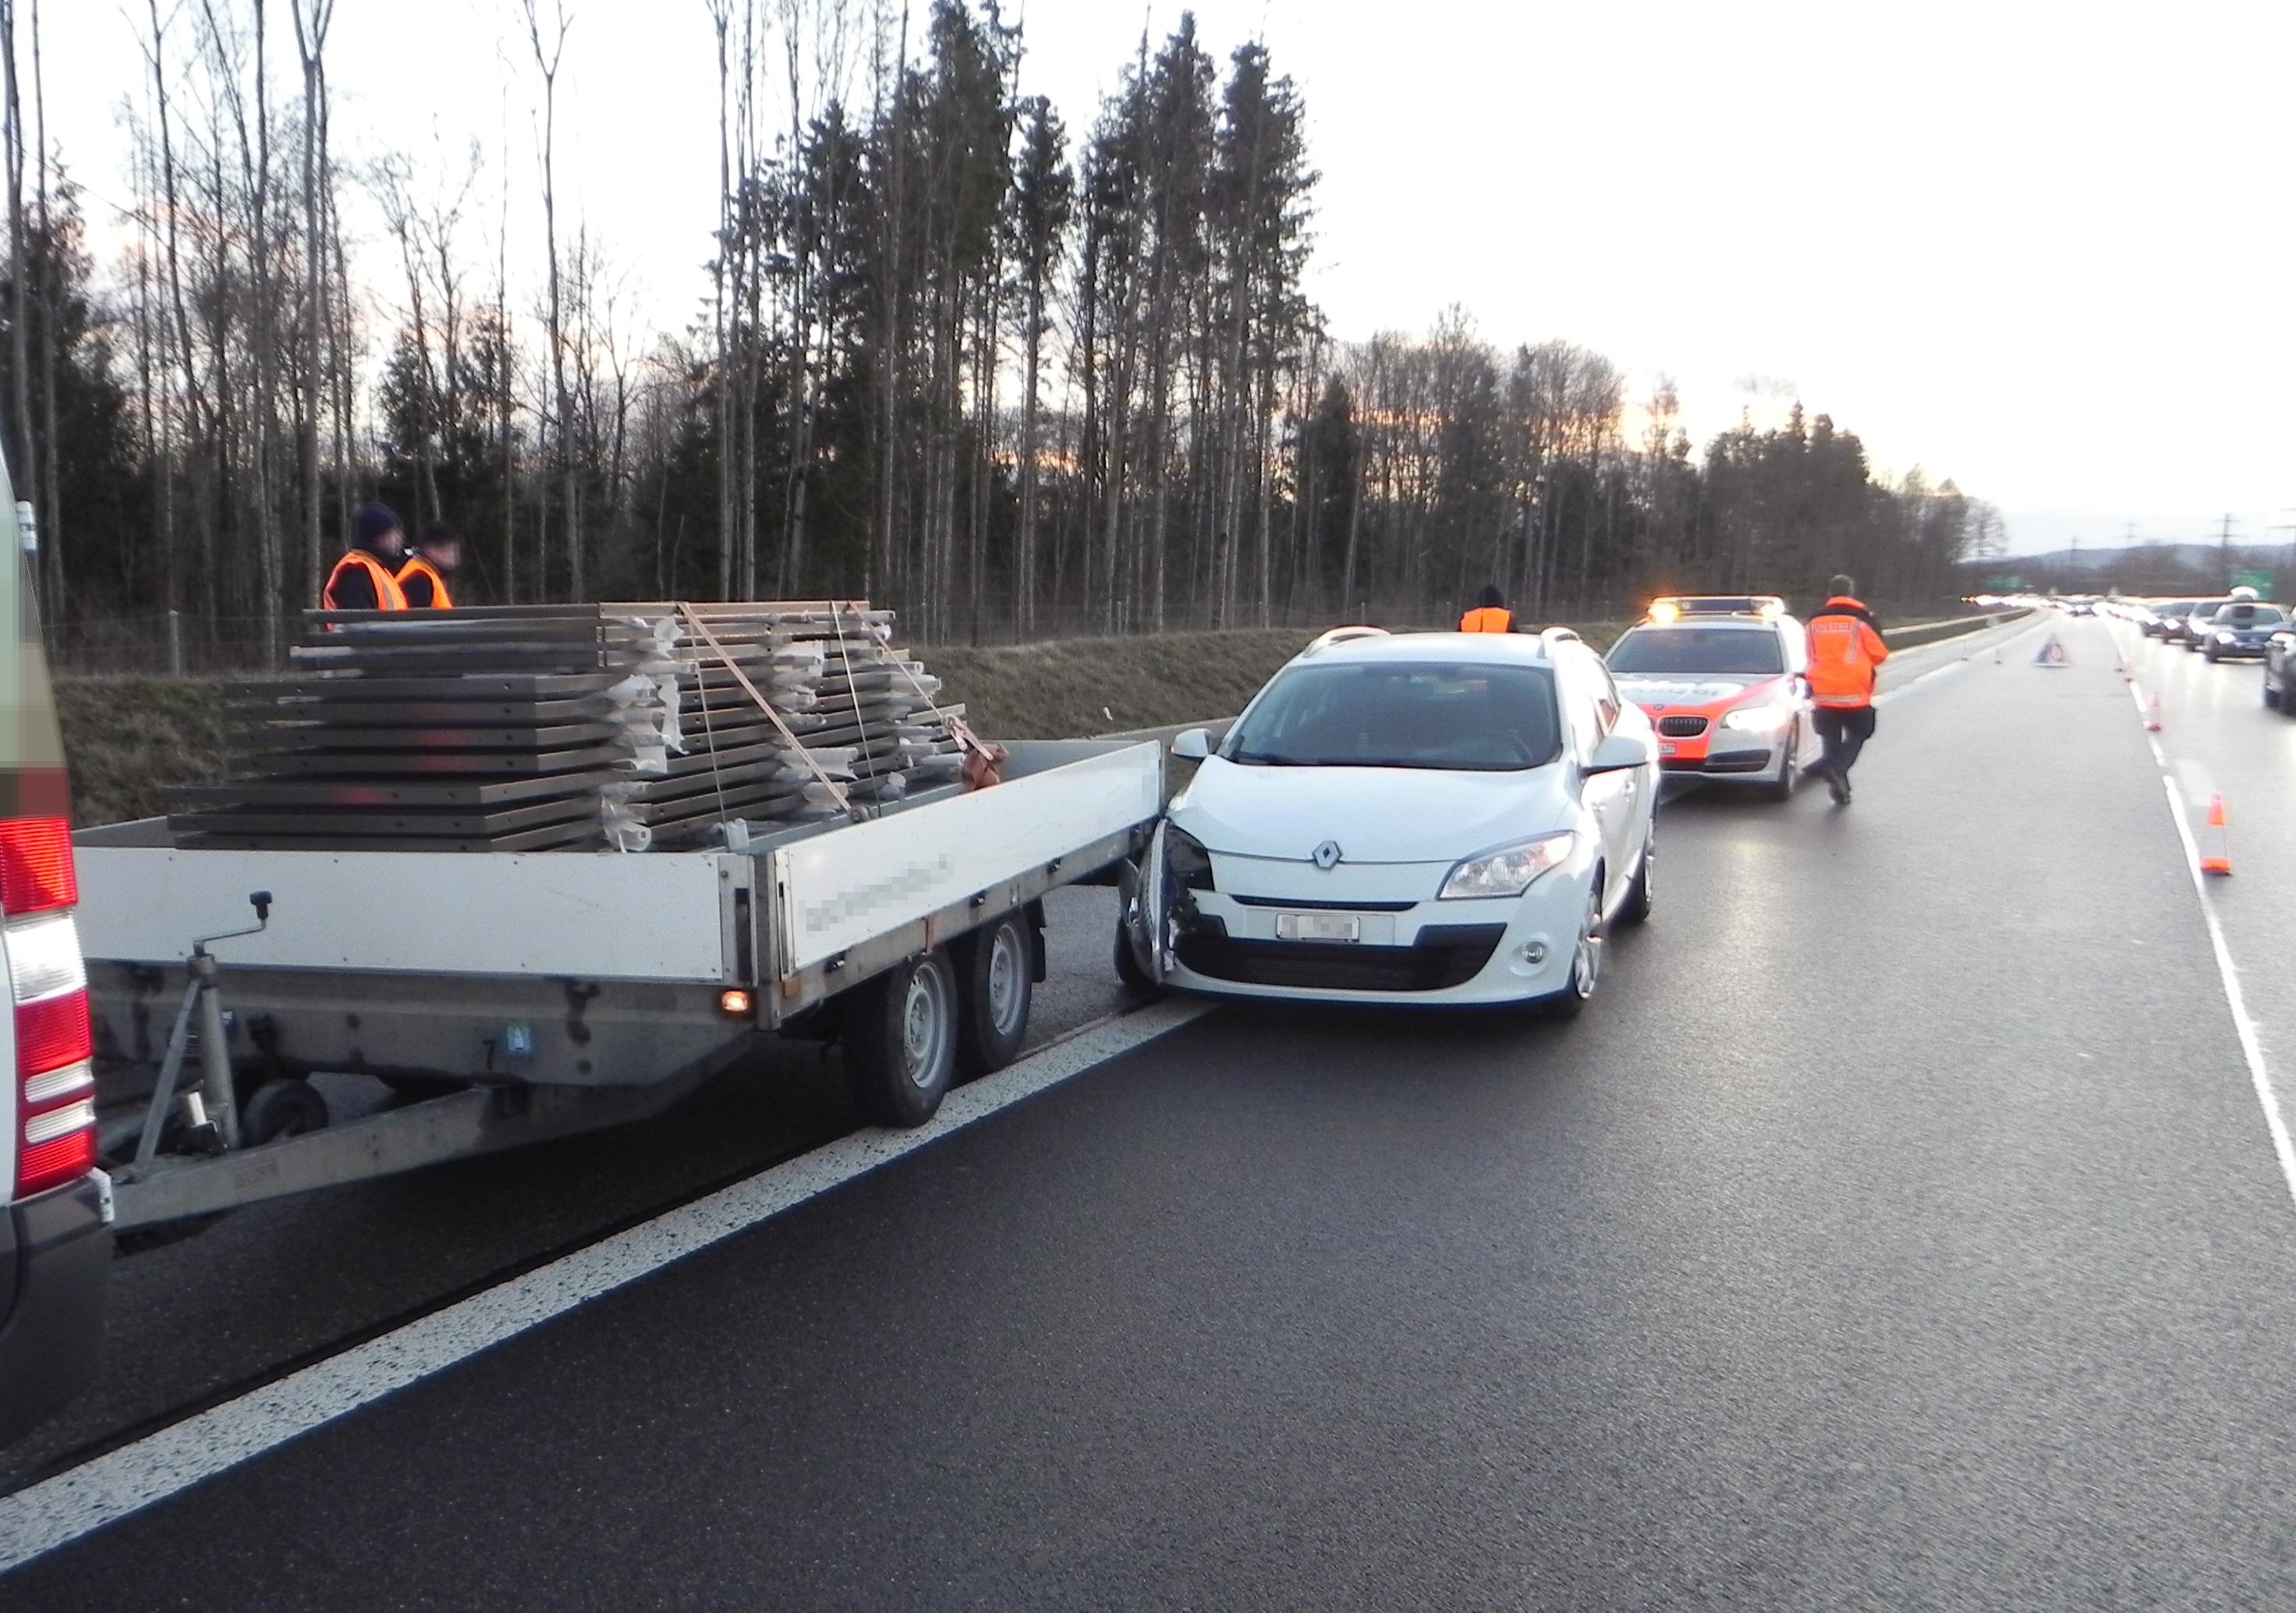 Auffahrunfall Autobahn A7, Personenwagen fuhr auf Anhänger eines Lieferwagens auf.